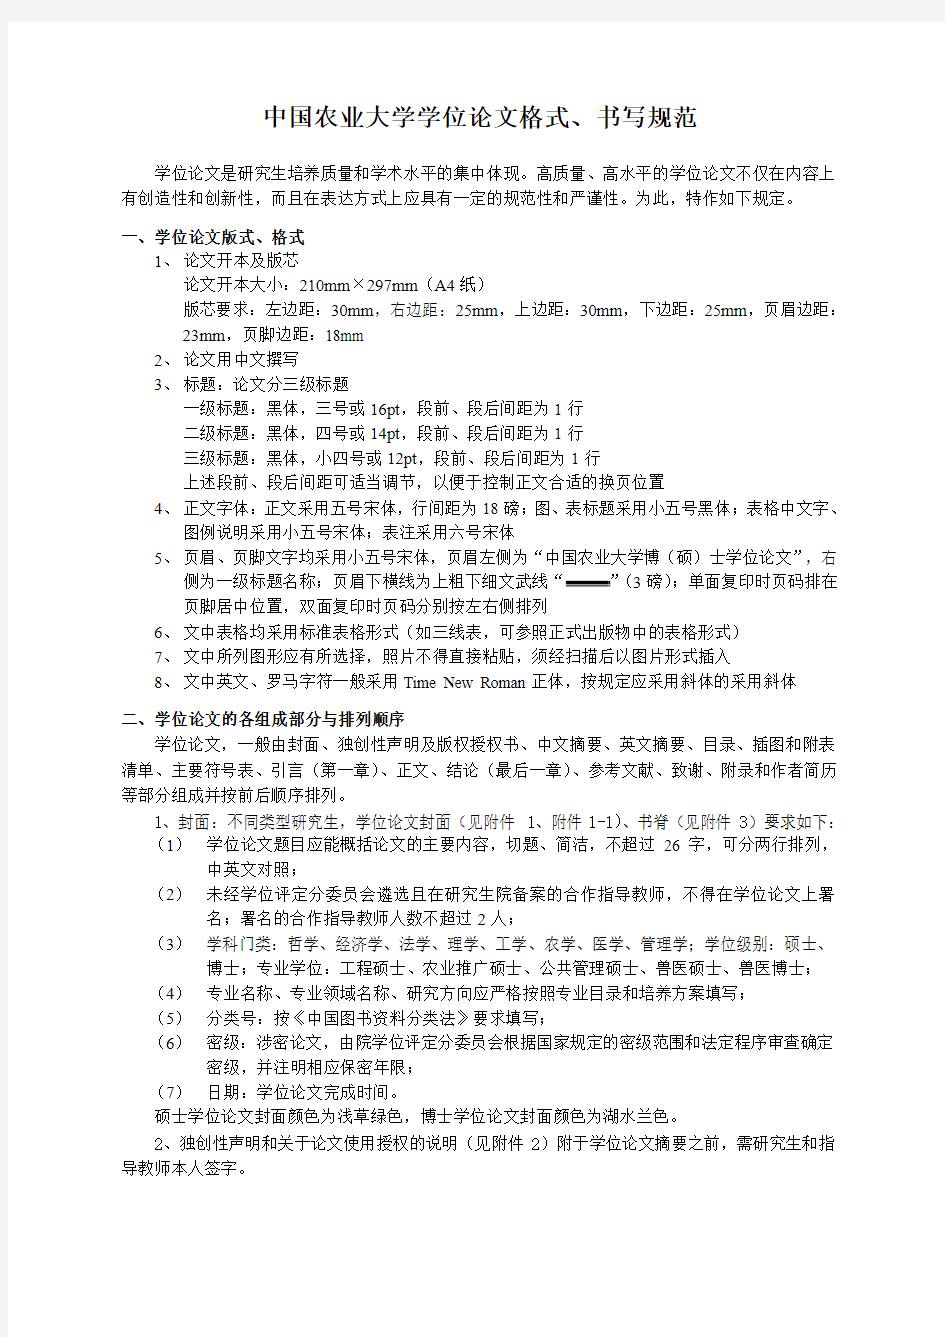 中国农业大学学位论文格式、书写规范(最新版)